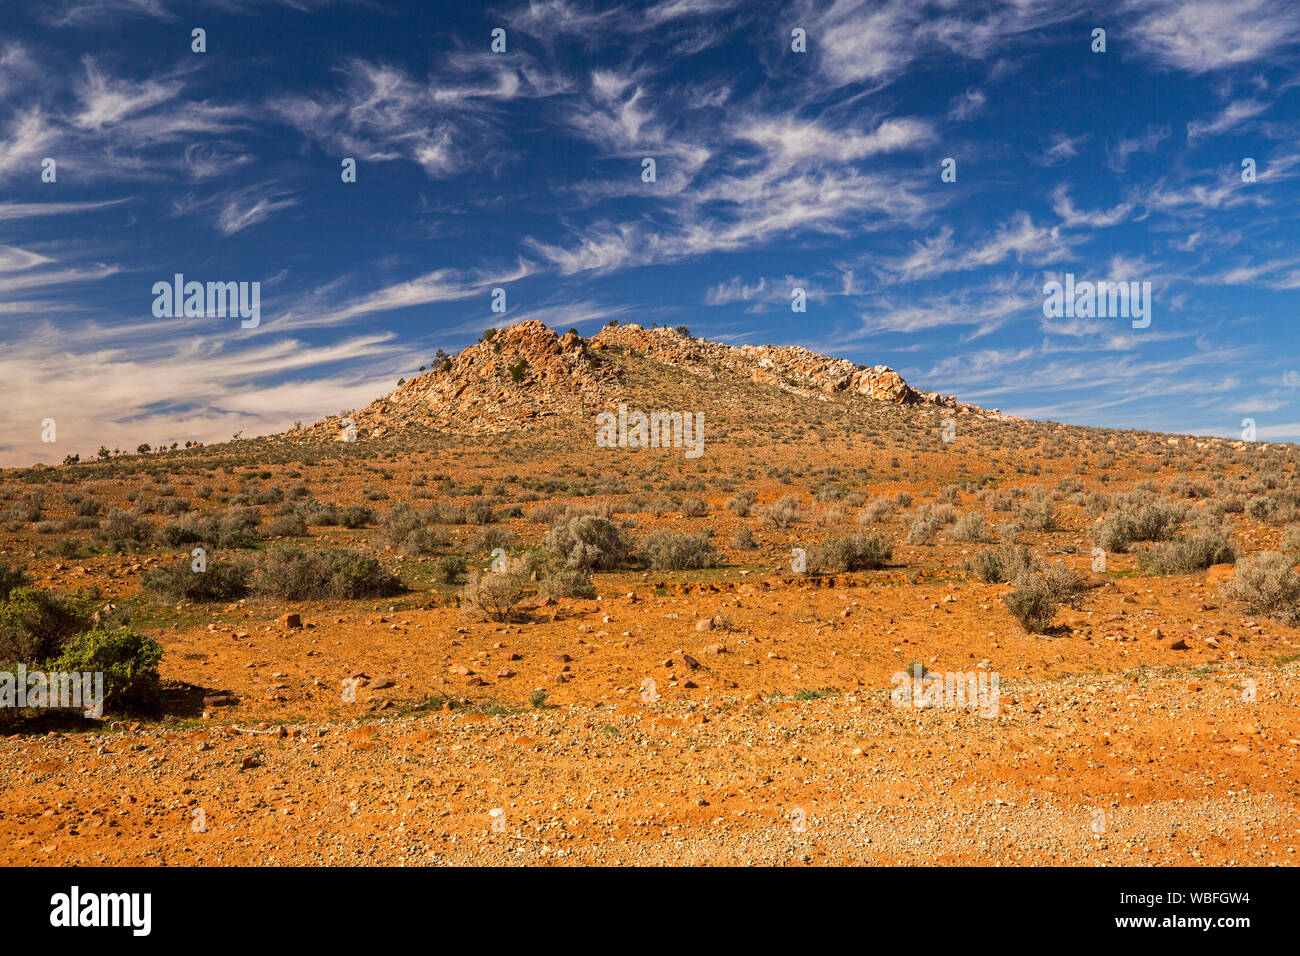 Árido paisaje desierto de grava de Flinders Ranges región con colinas bajas en el horizonte, levantándose en un cielo azul con nubes pecoso en el sur de Australia Foto de stock